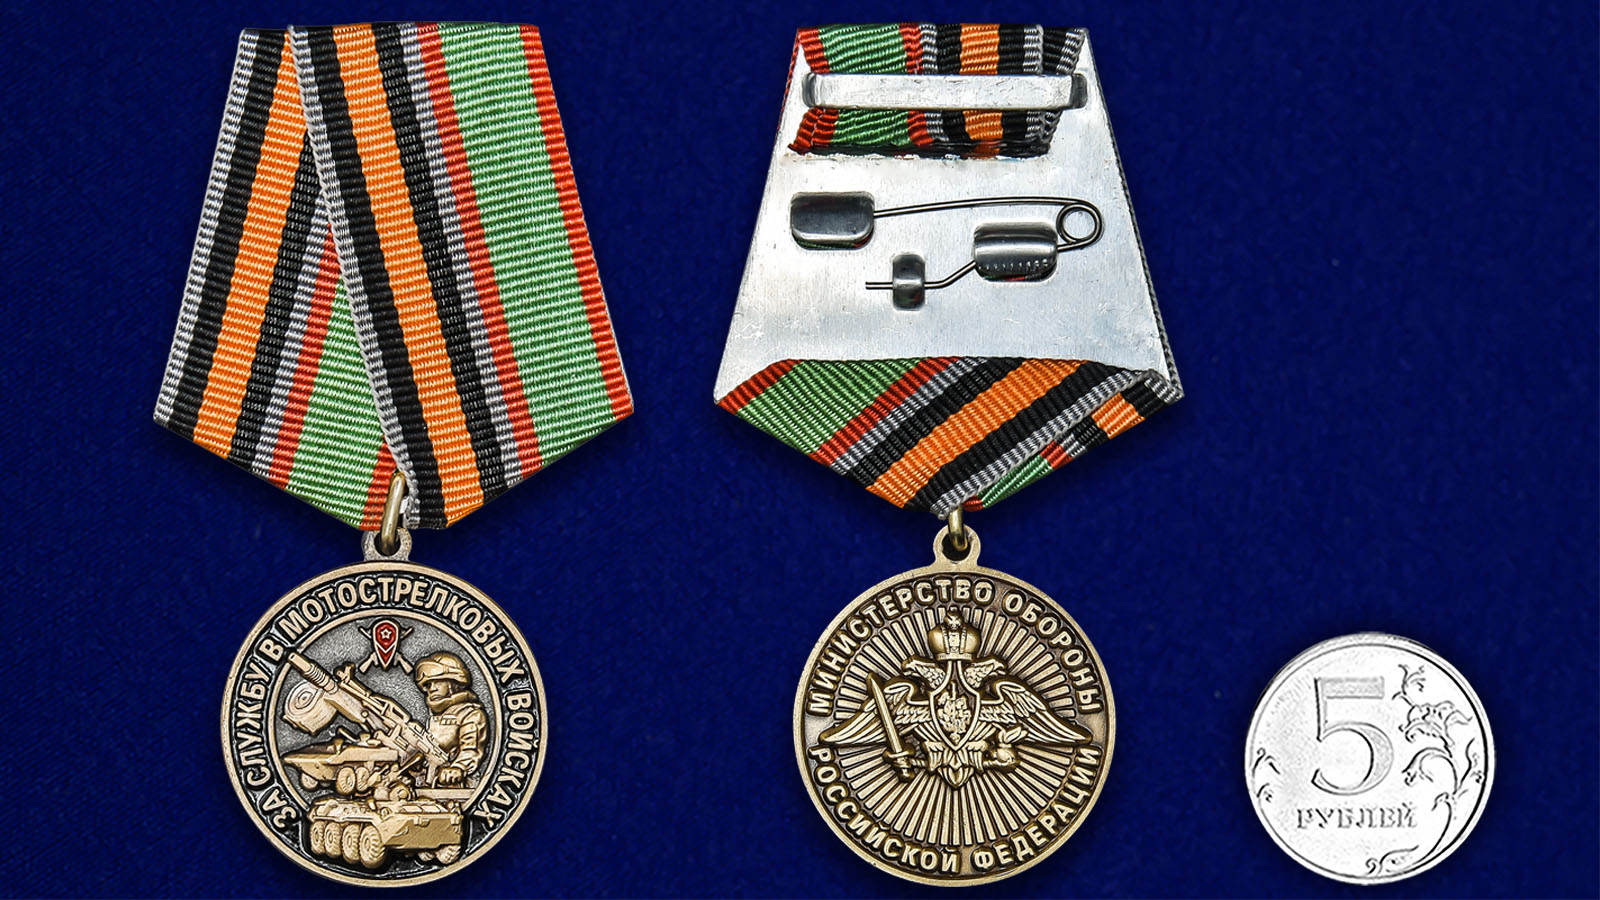 Нагрудная медаль "За службу в Мотострелковых войсках" 